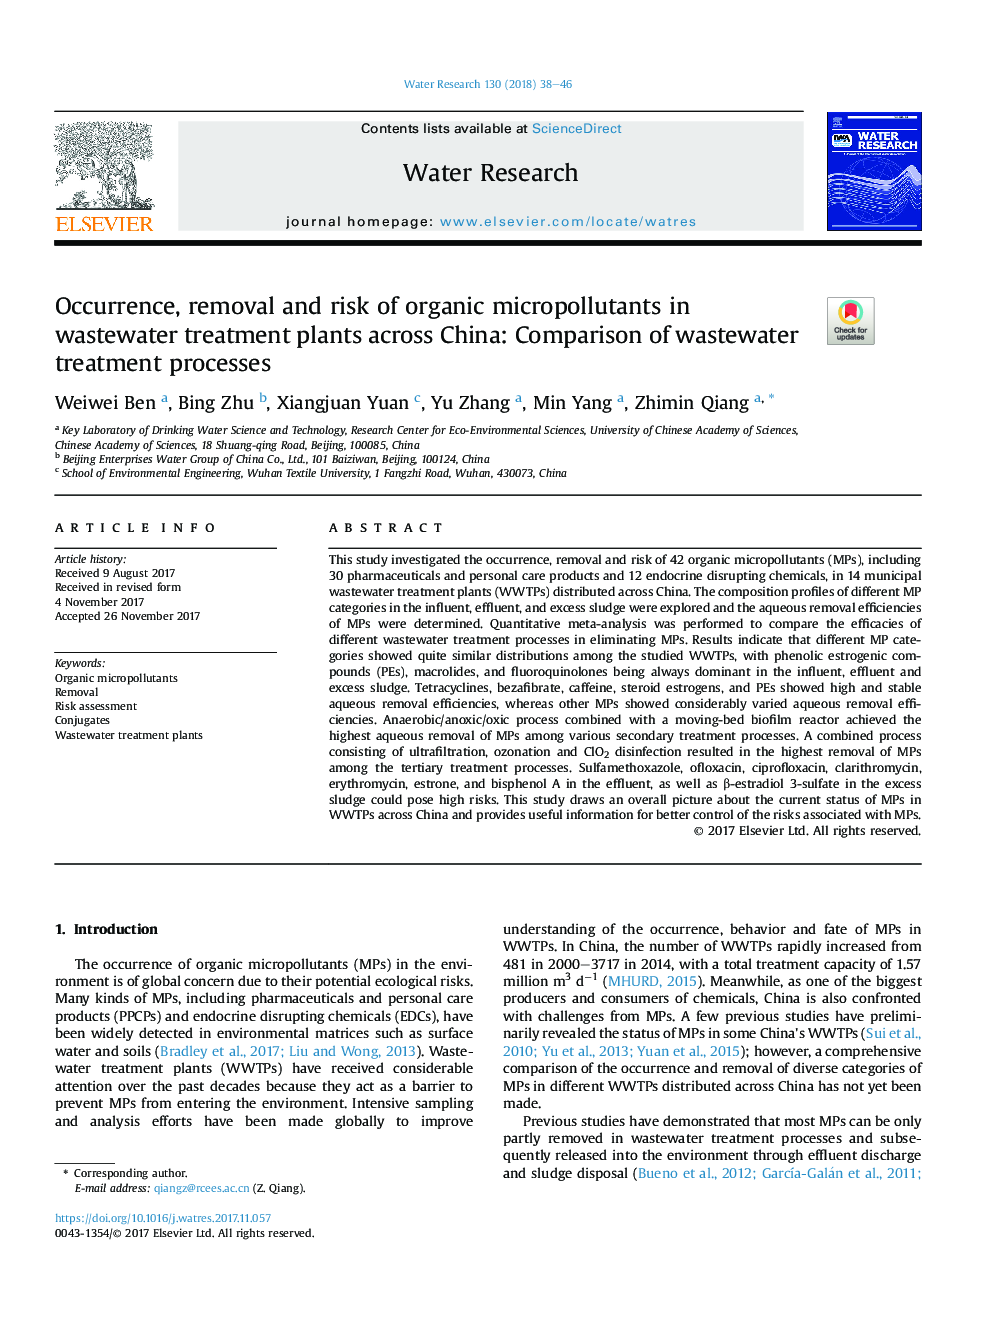 پیدایش، حذف و خطر آسیب های گیاهی آلی در گیاهان تصفیه پساب در سراسر چین: مقایسه روند 